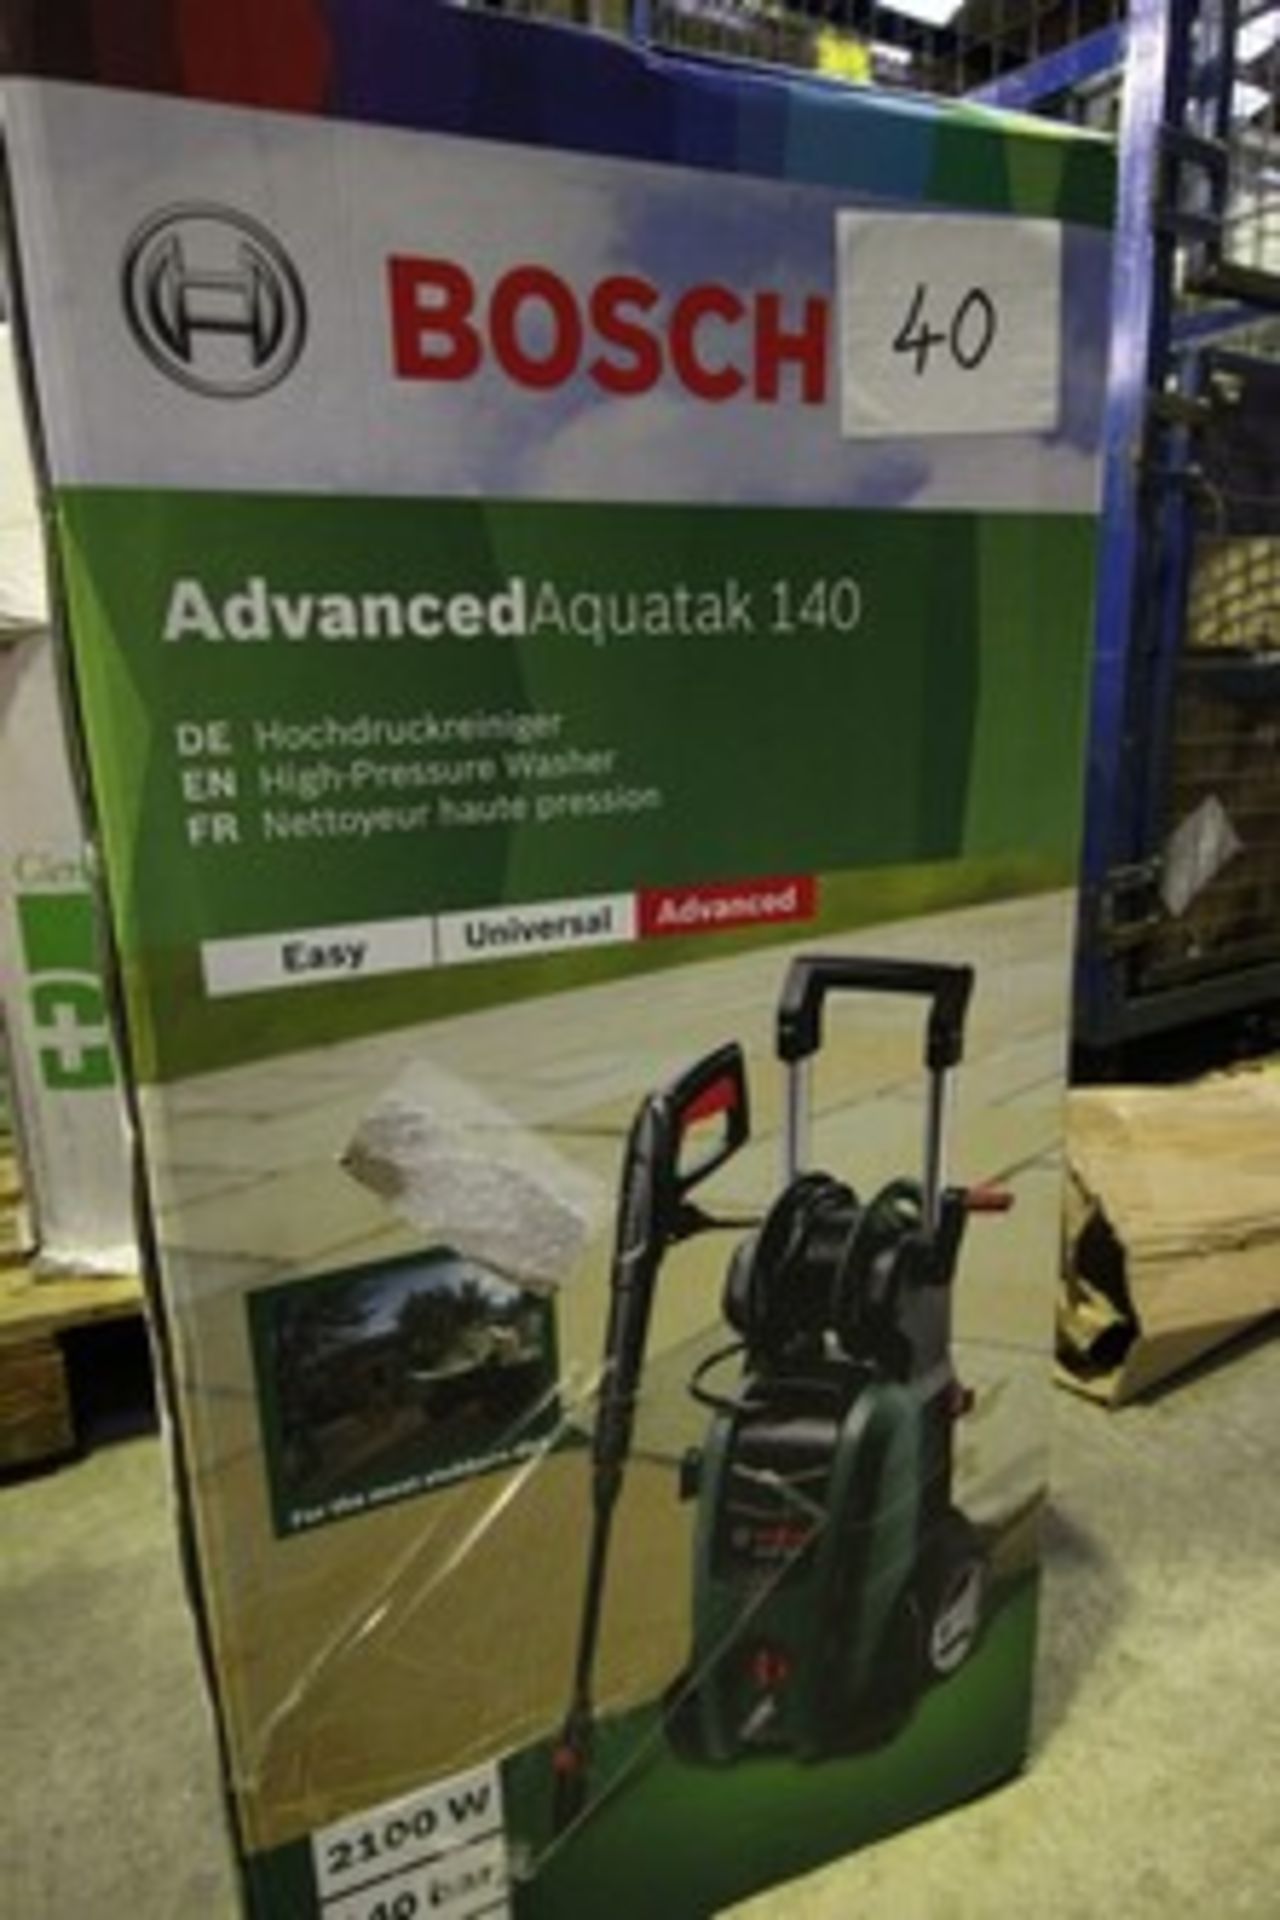 1 x Bosch Advanced Aquatak 140 2100W 140 bar high pressure washer - sealed new in box (ES2)